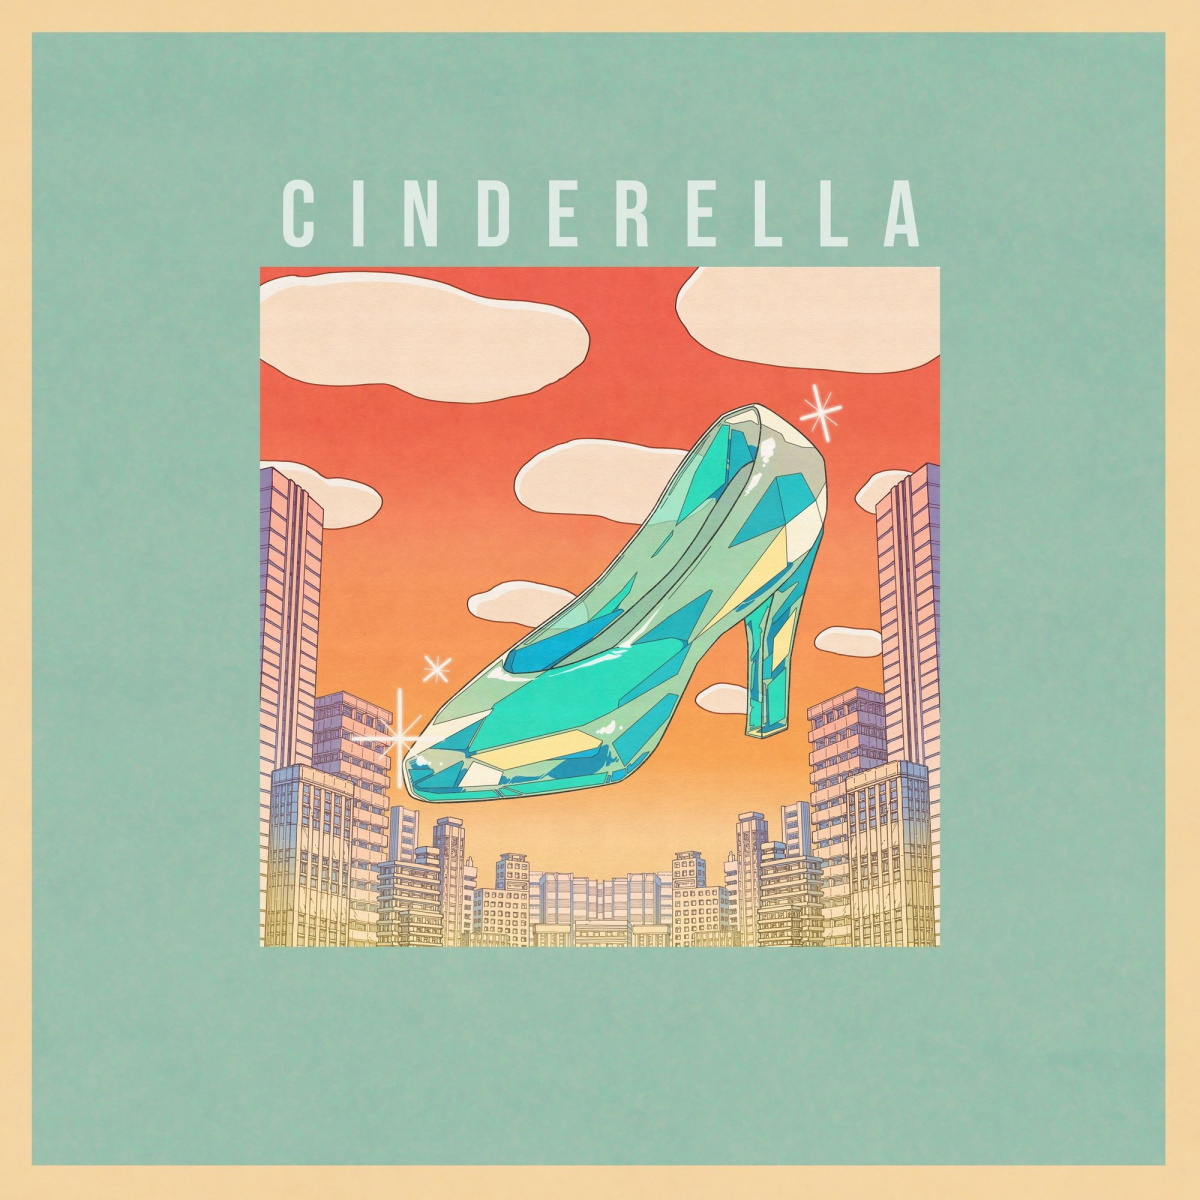 Cover image of『CidergirlCinderella』from the Album『Cinderella』